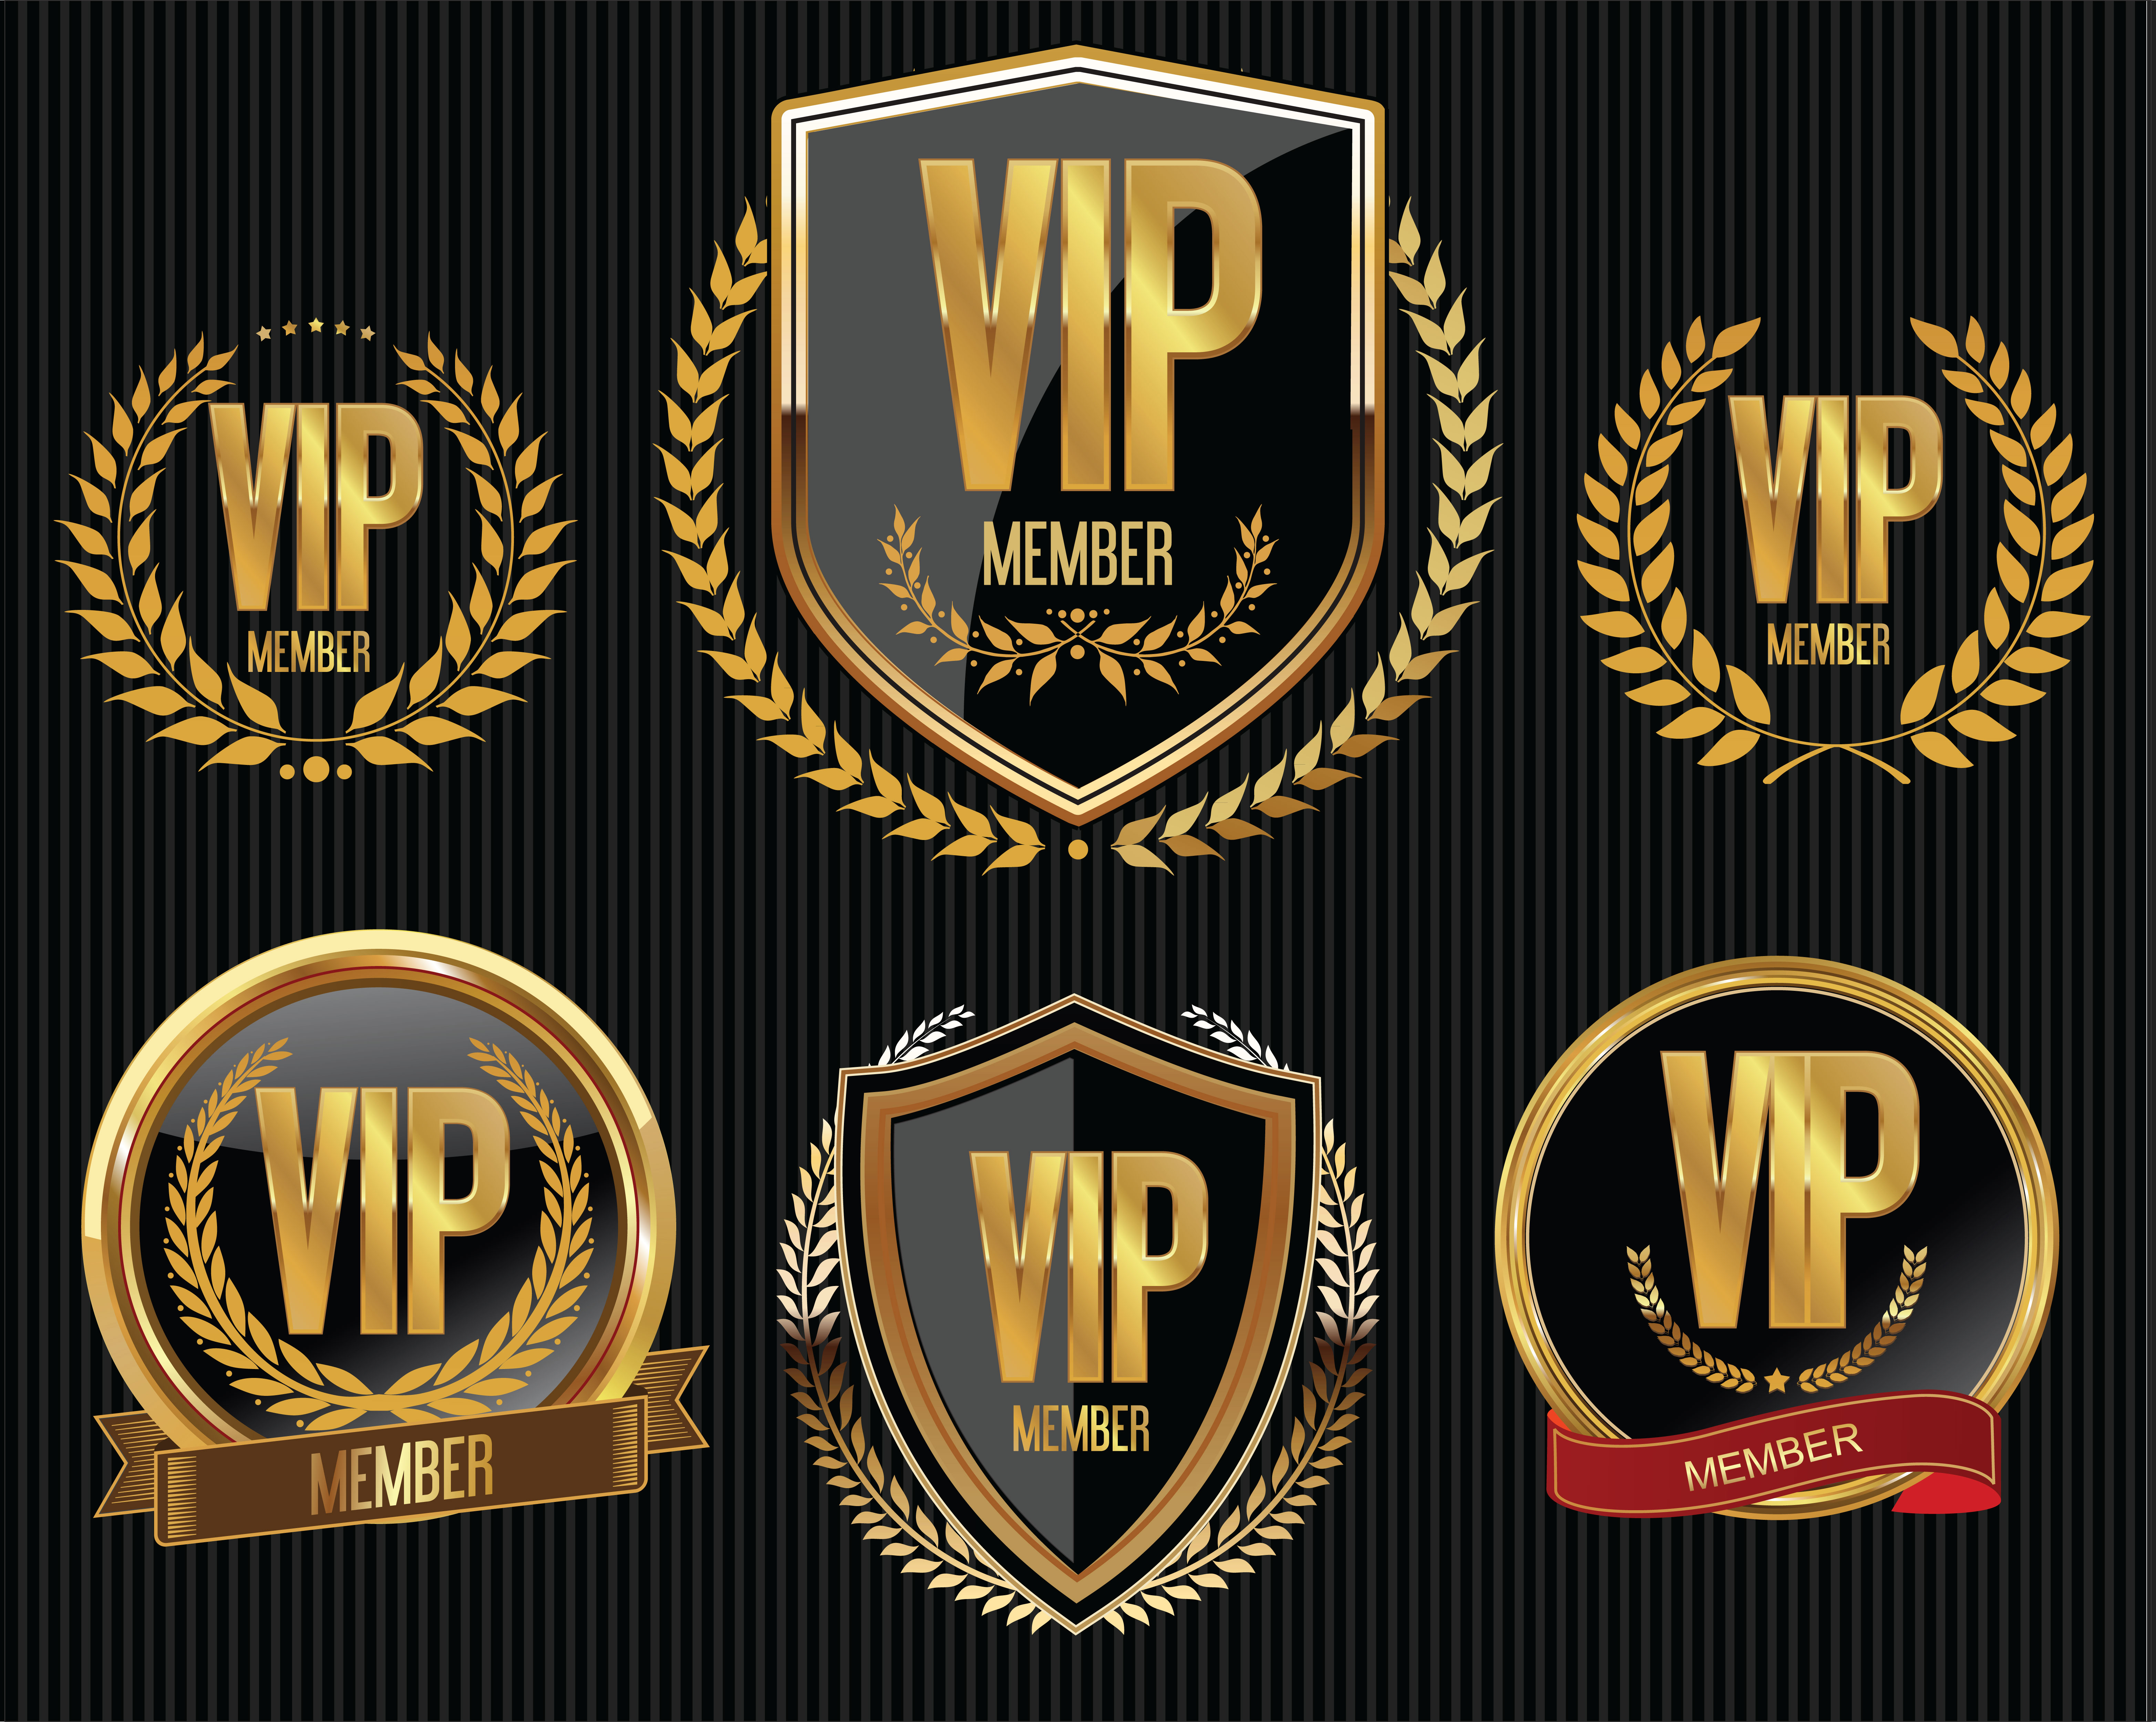 Vip member golden badge collection 535244 Vector Art at Vecteezy